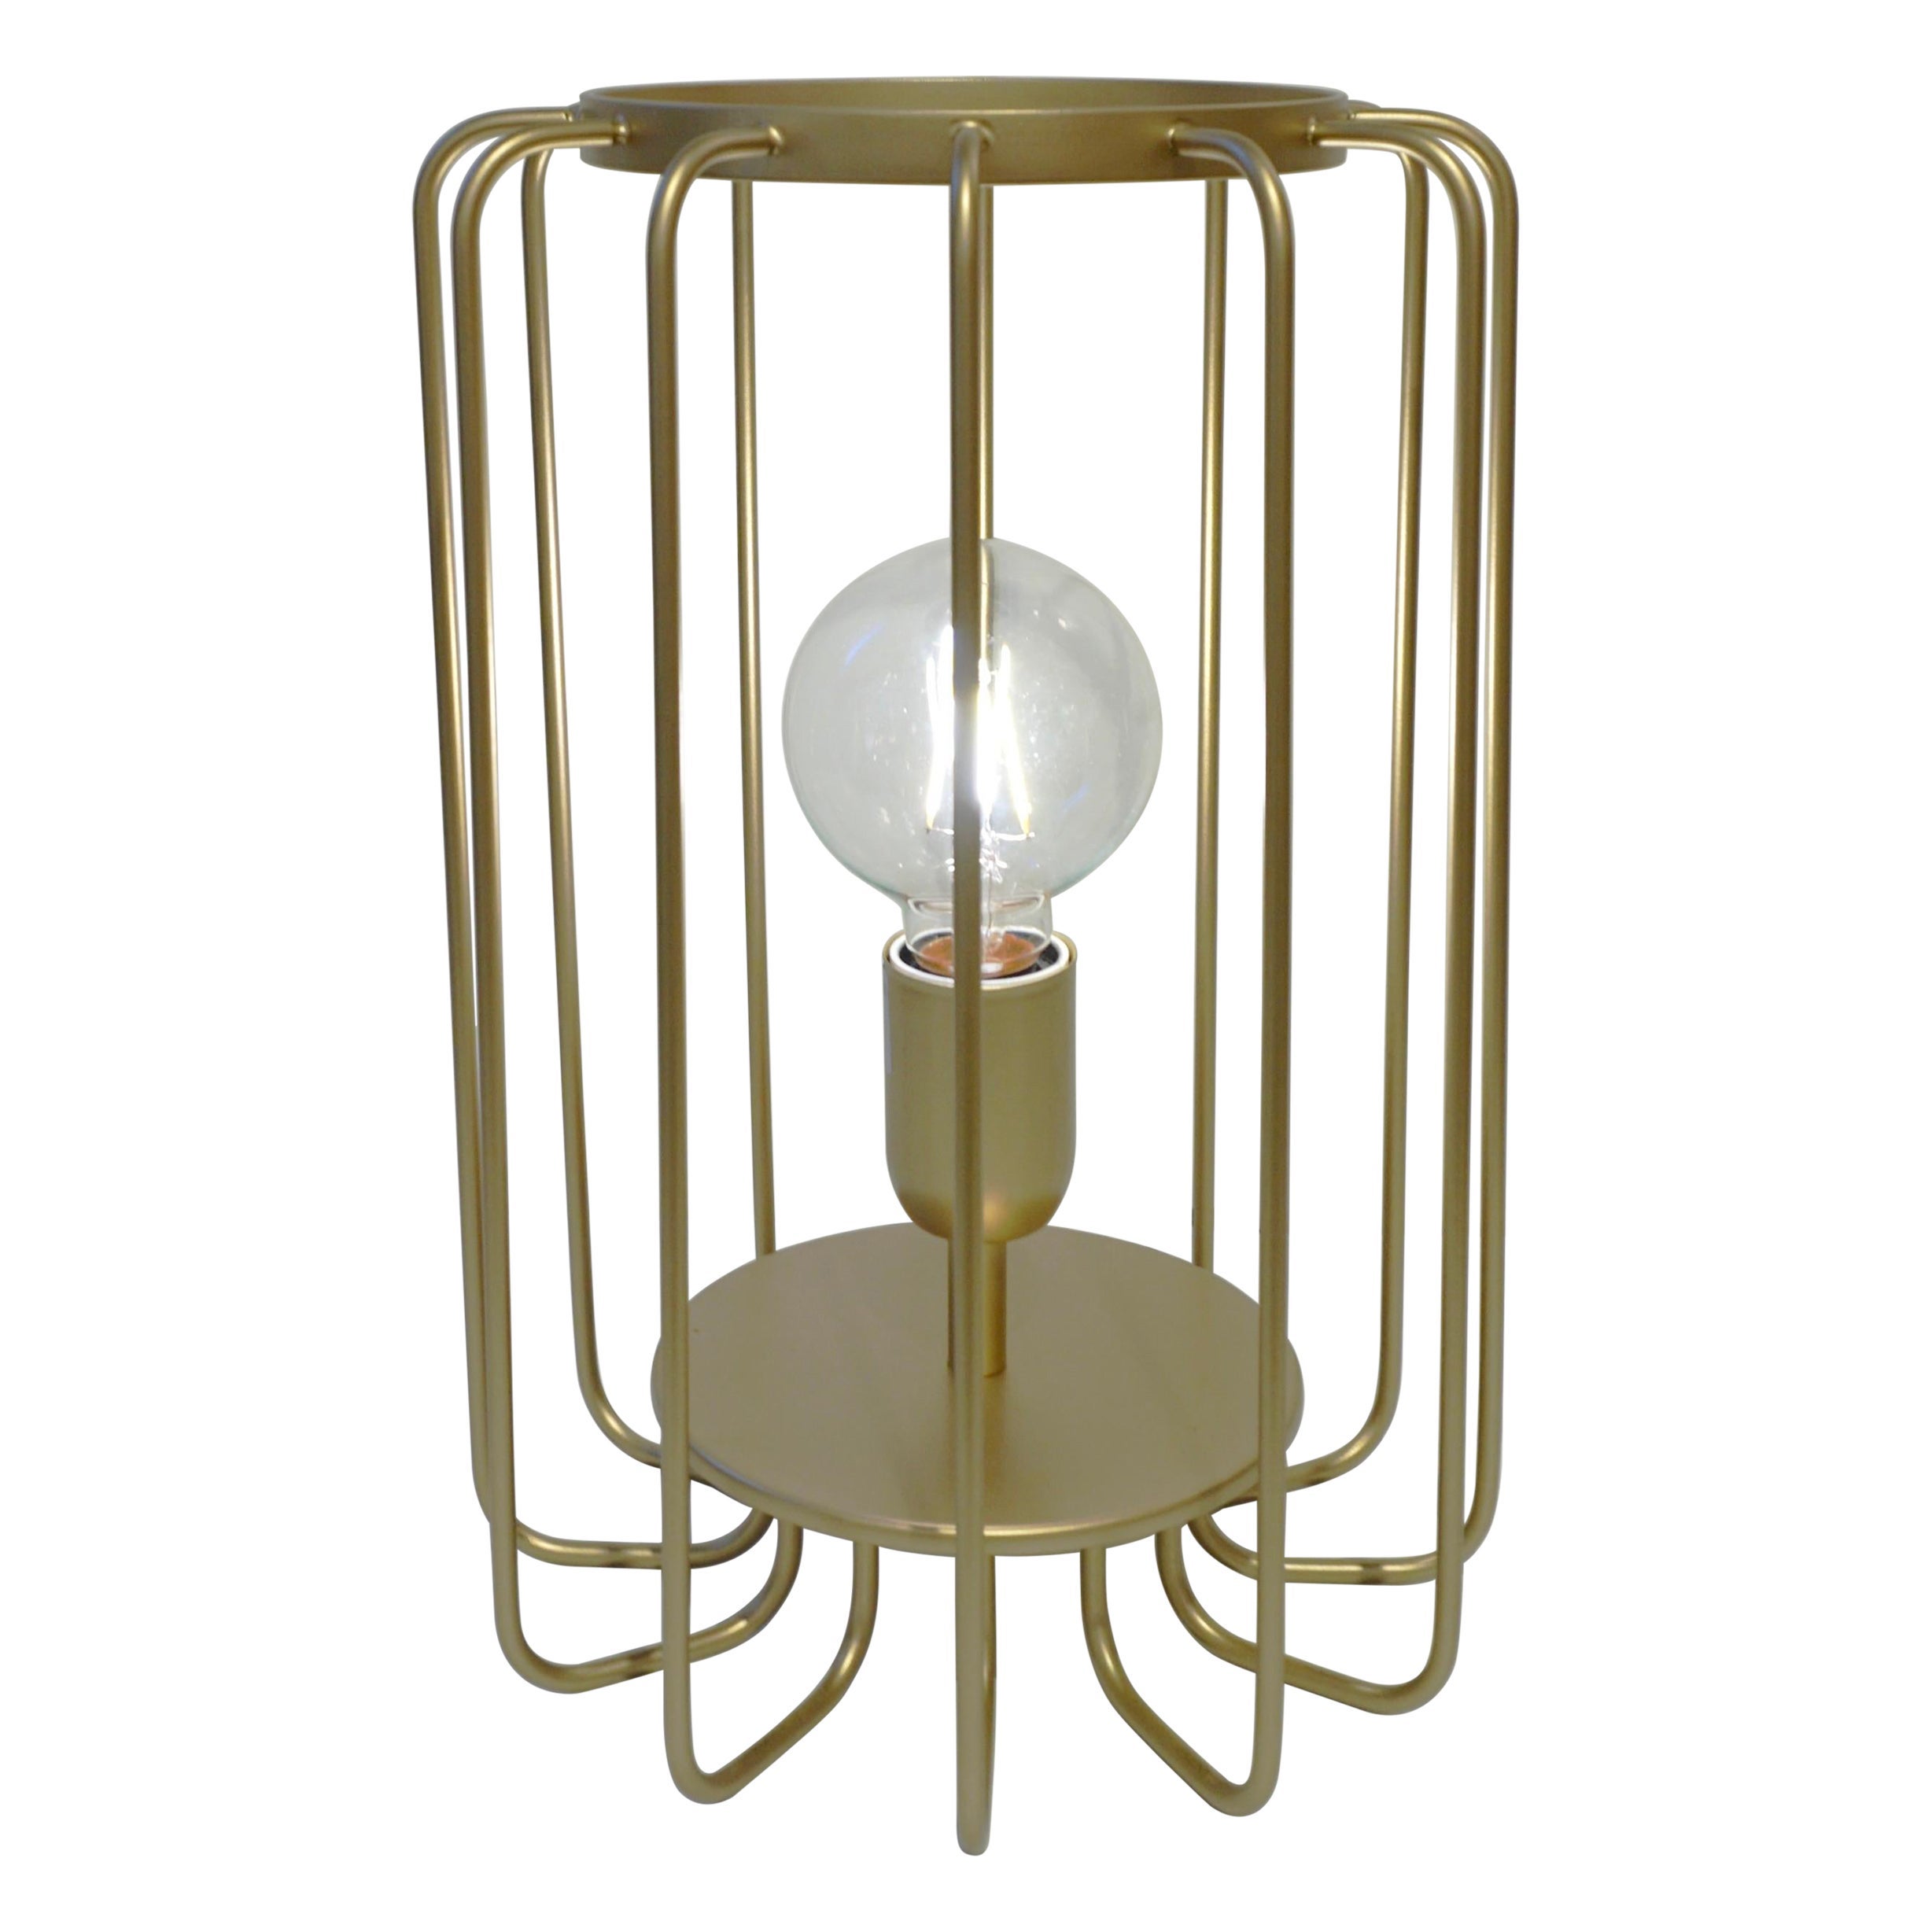 Cosulich Interiors, offene italienische, futuristische Tischlampe, Gold, Messing und Stahl, innen minimalistisch